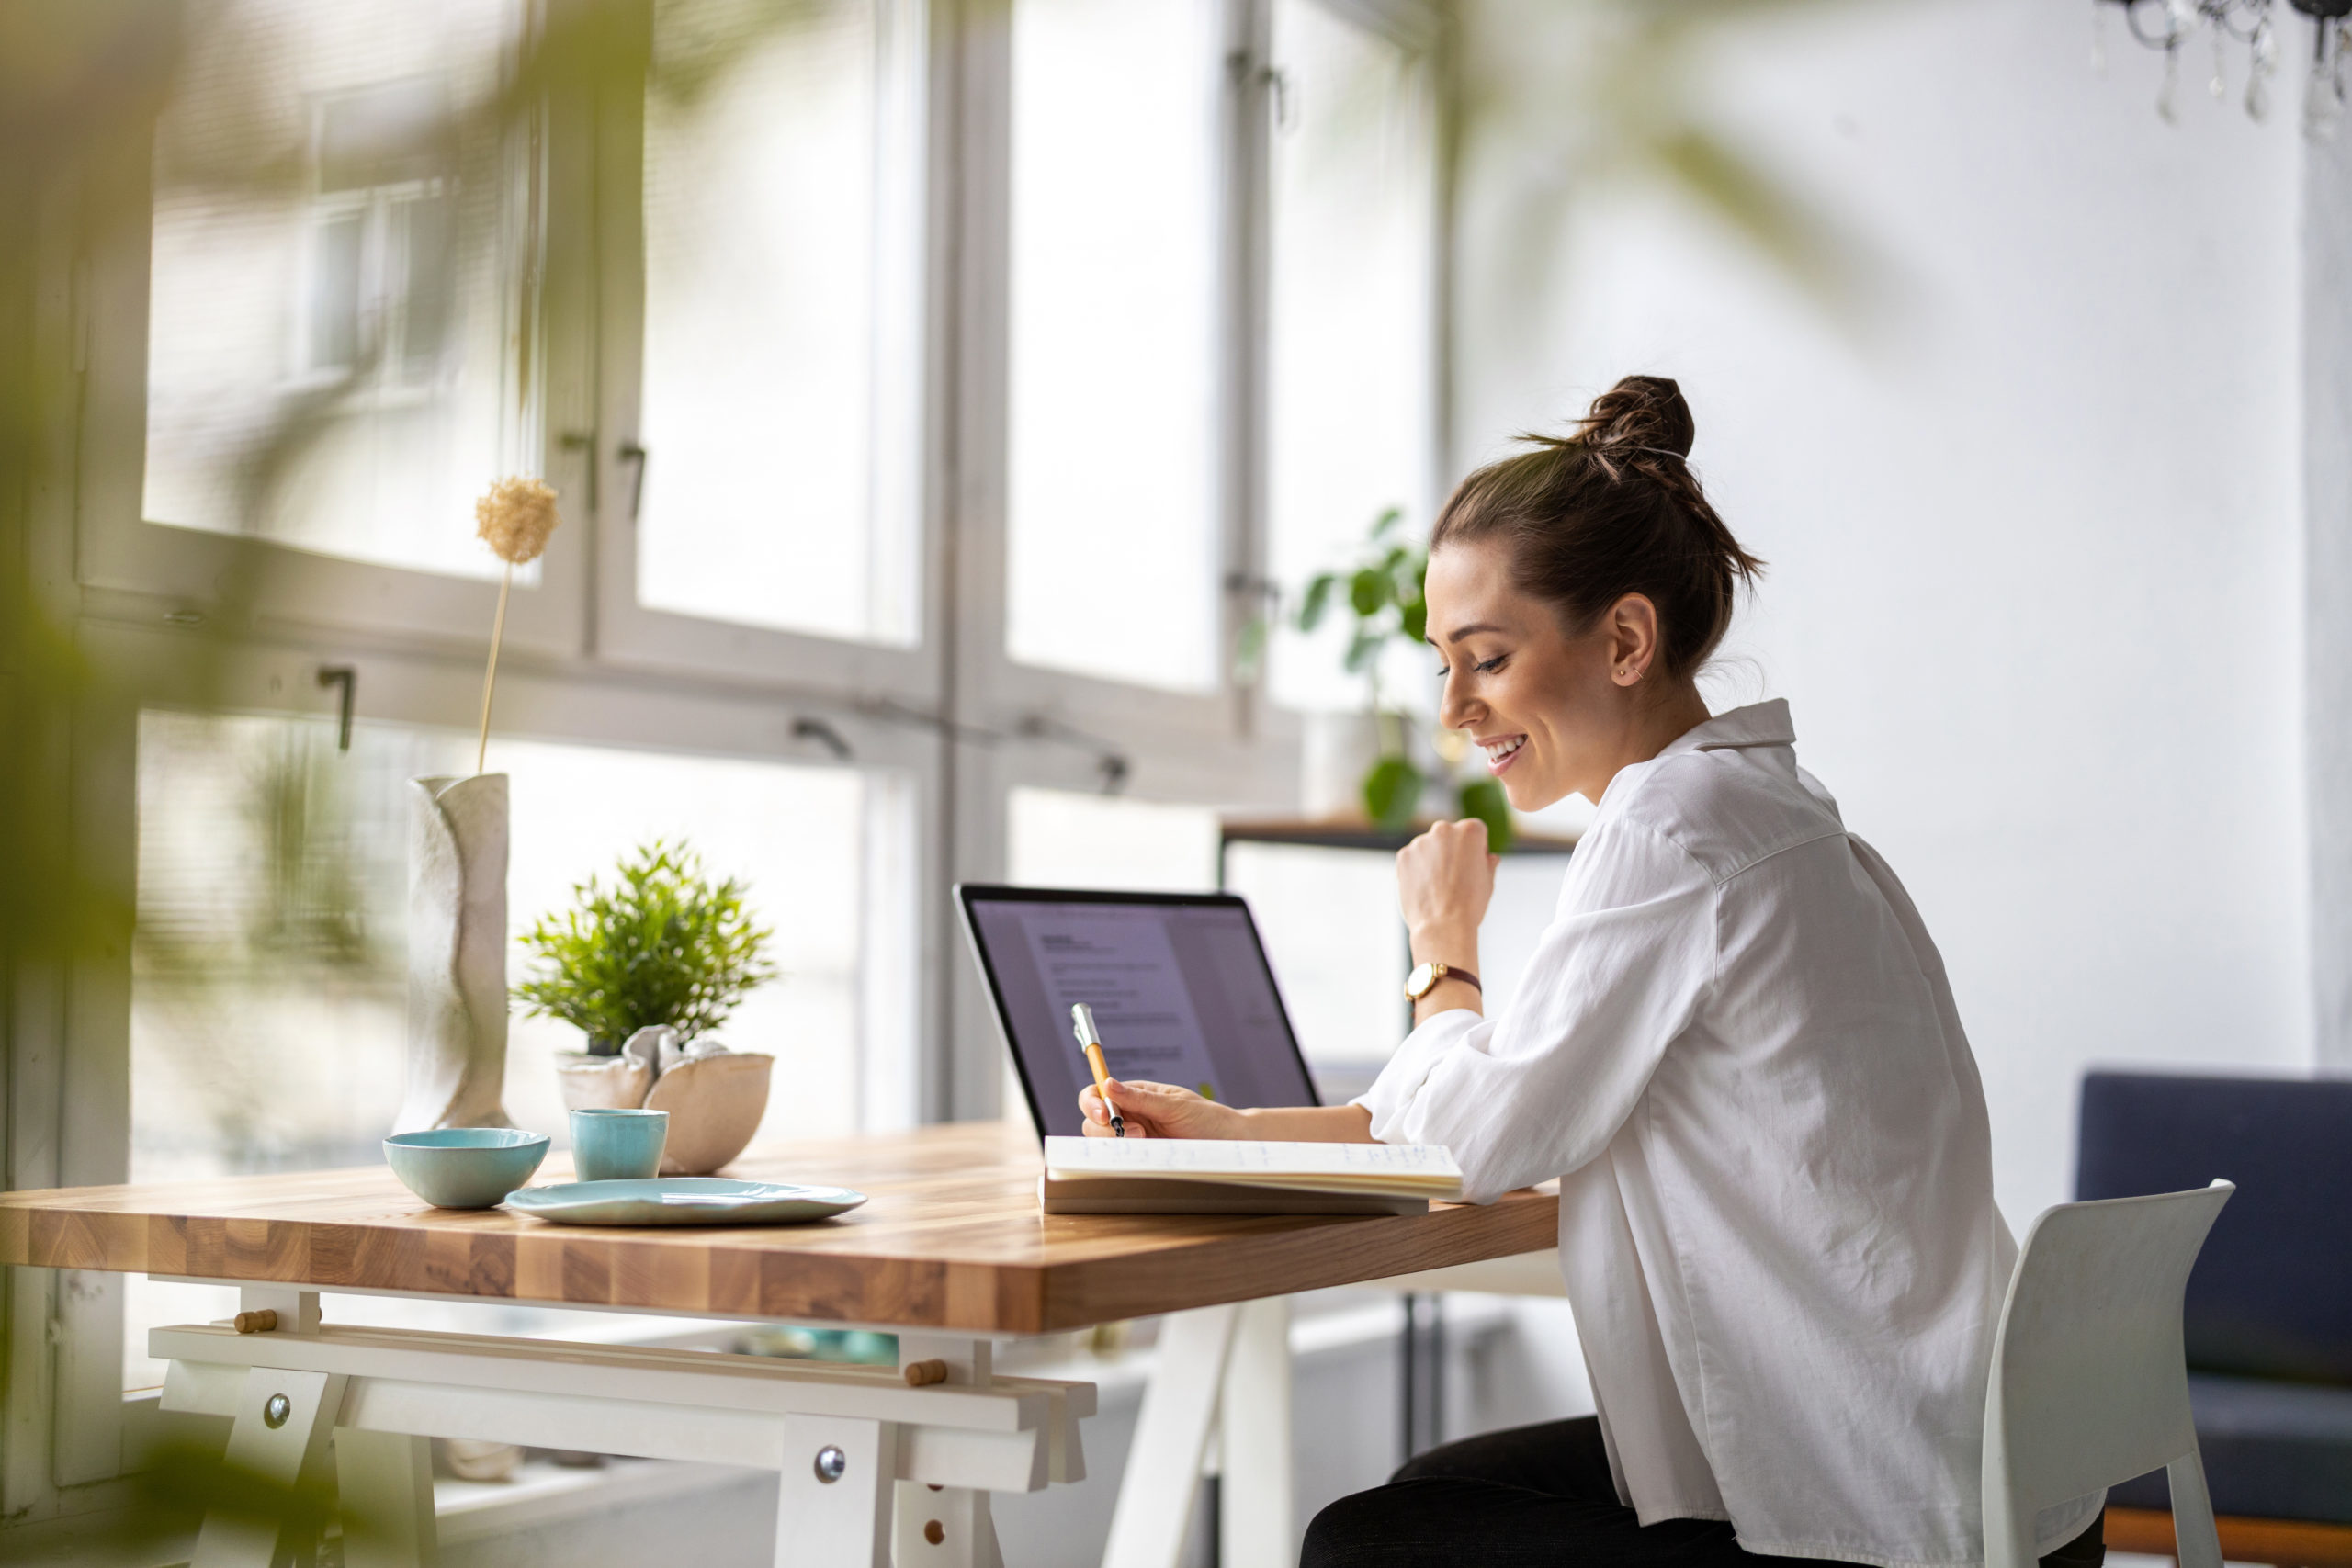 Frau mit weißer Bluse und Dutt sitzt vor Laptop am Schreibtisch, der an großer Fensterfront steht. Sie lächelt, hält einen Stift und schaut auf ihren Notizblock.